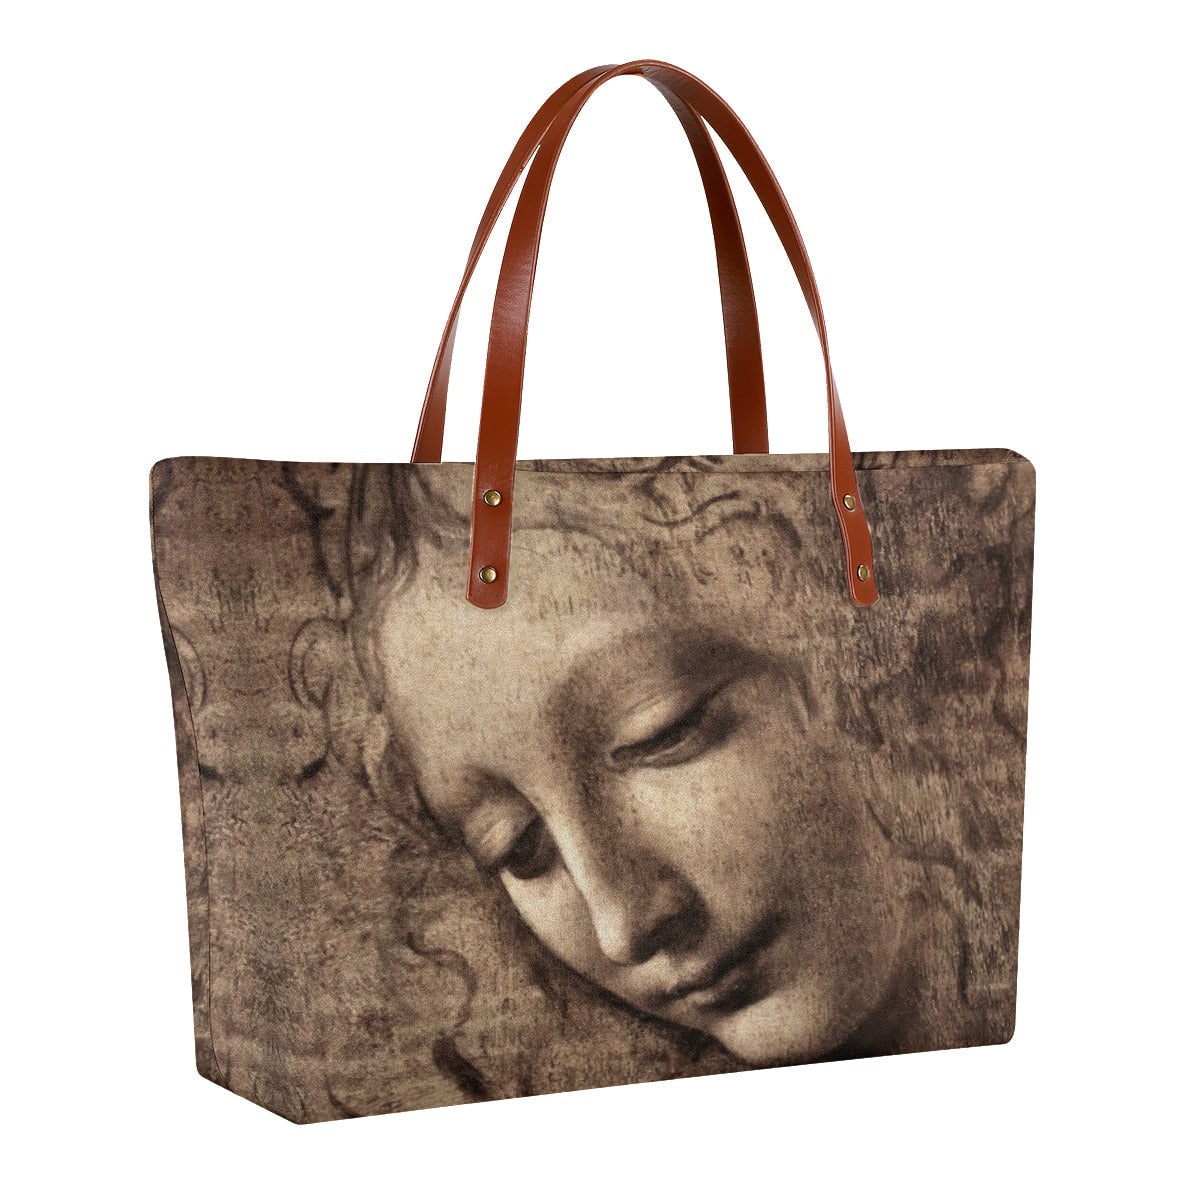 La Scapigliata by Leonardo da Vinci Tote Bag